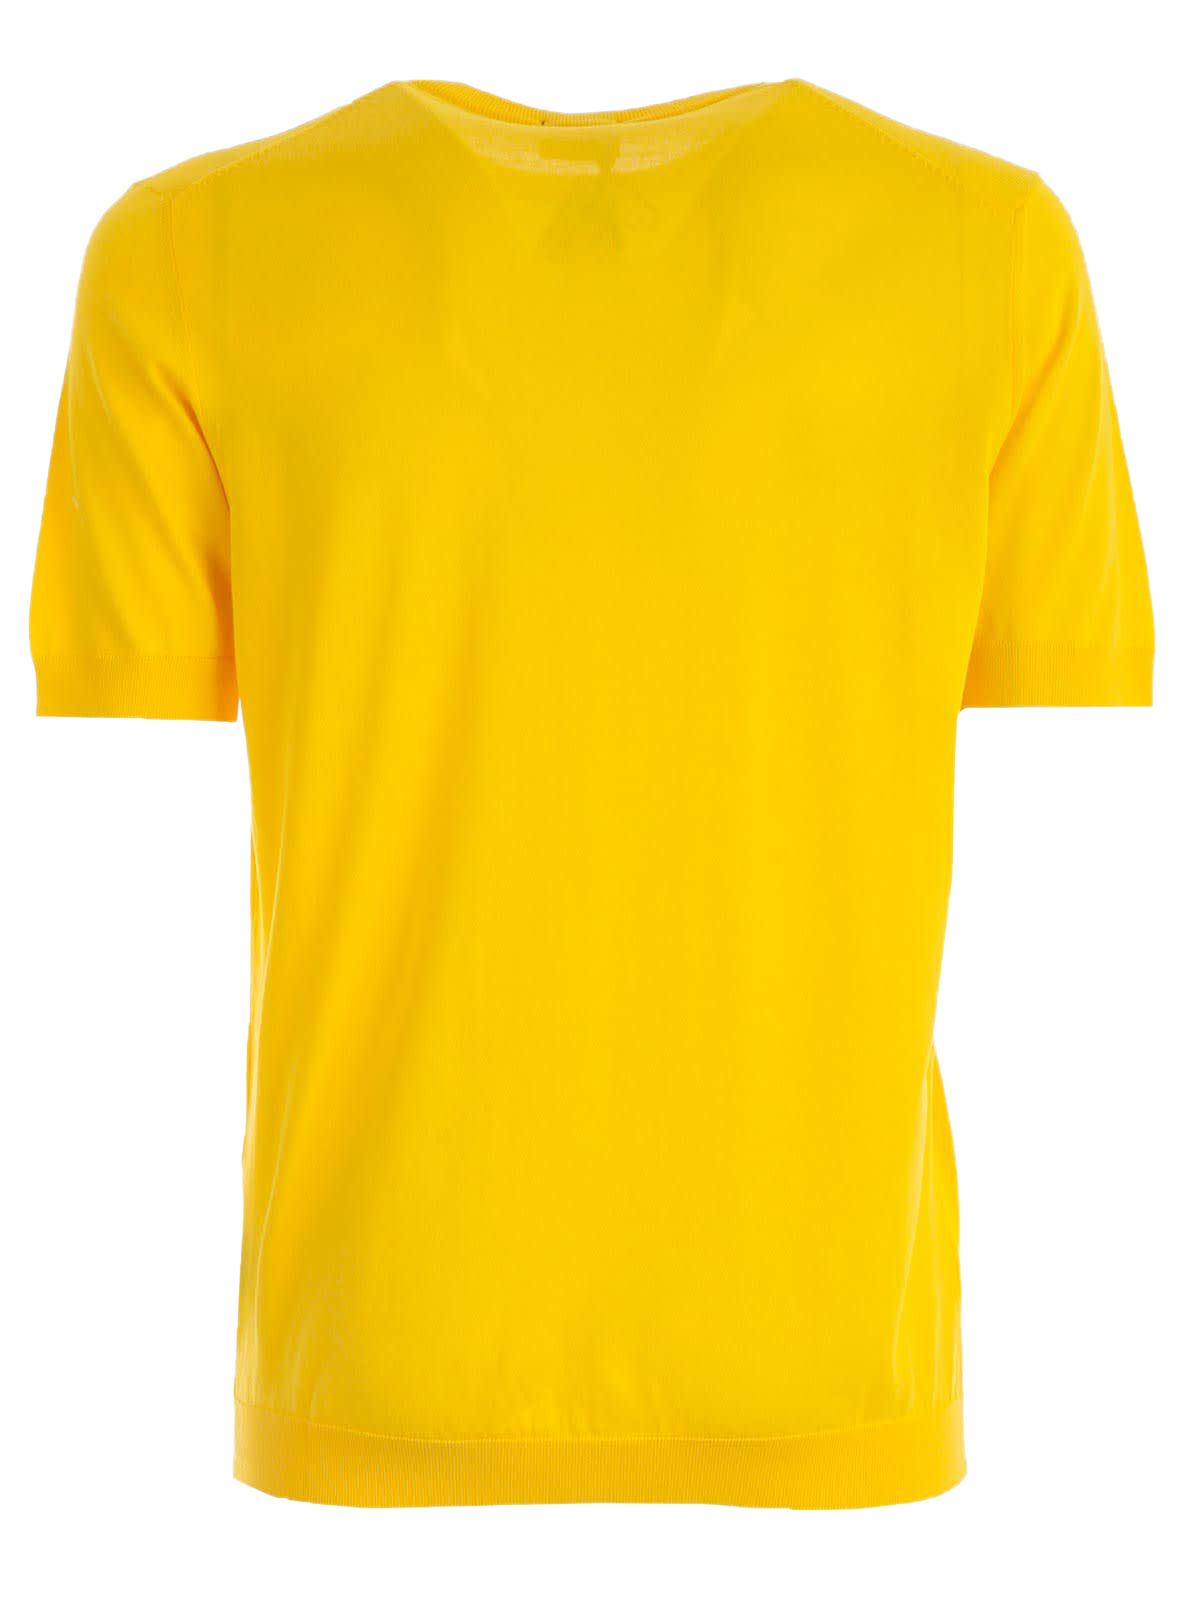 Immagine Trasparente t-shirt gialla semplice